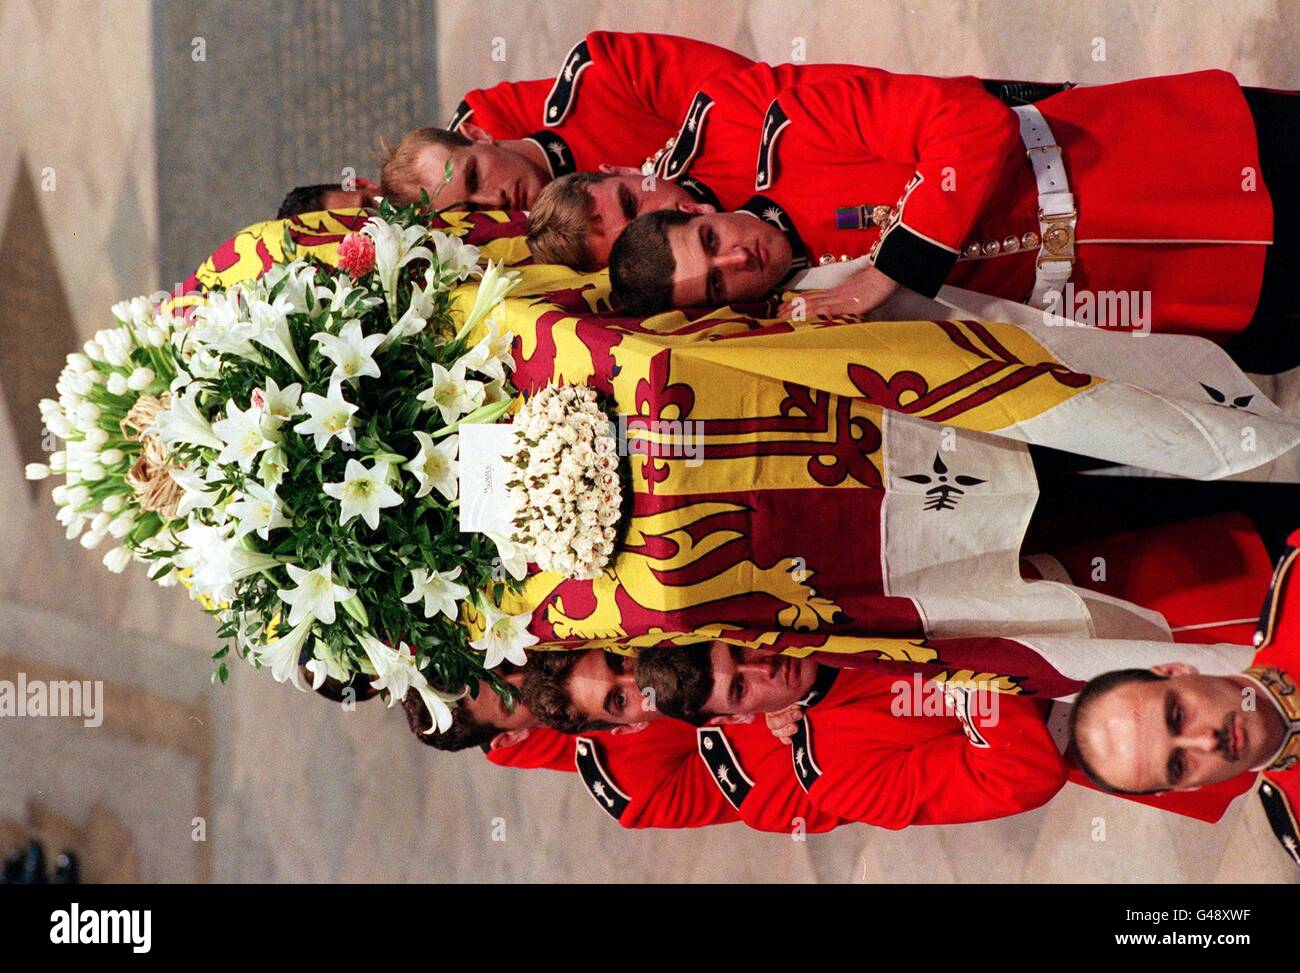 Le Royal Standard-cercueil drapé de Diana, princesse de Galles, est porté par un porteur de Welsh Guards dans l'abbaye de Westminster à Londres pour la cérémonie funéraire 06 septembre. Piscine WPA Banque D'Images